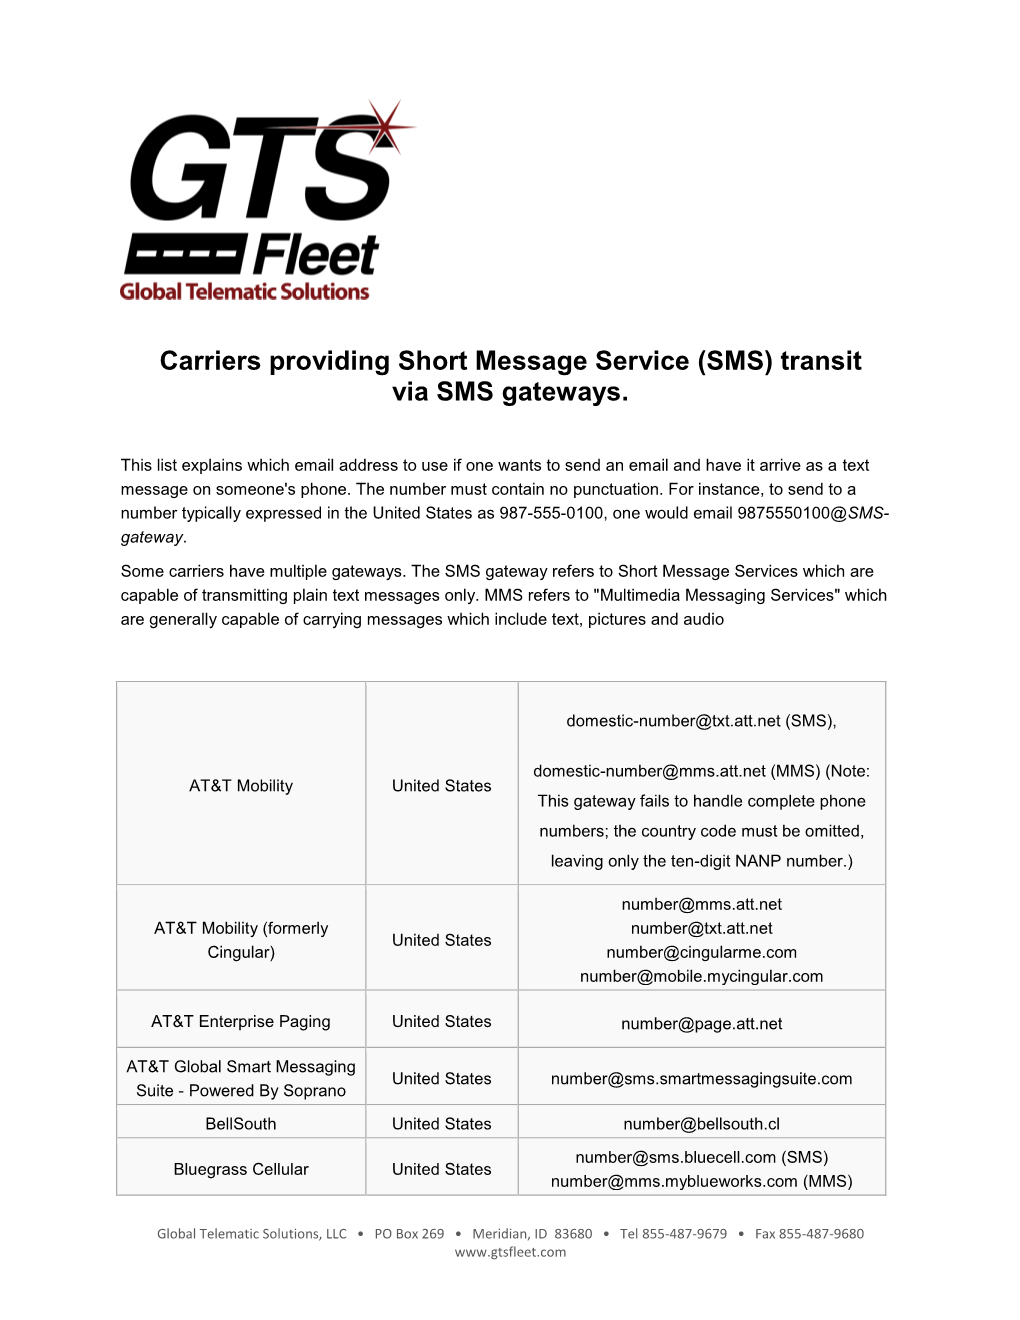 SMS) Transit Via SMS Gateways